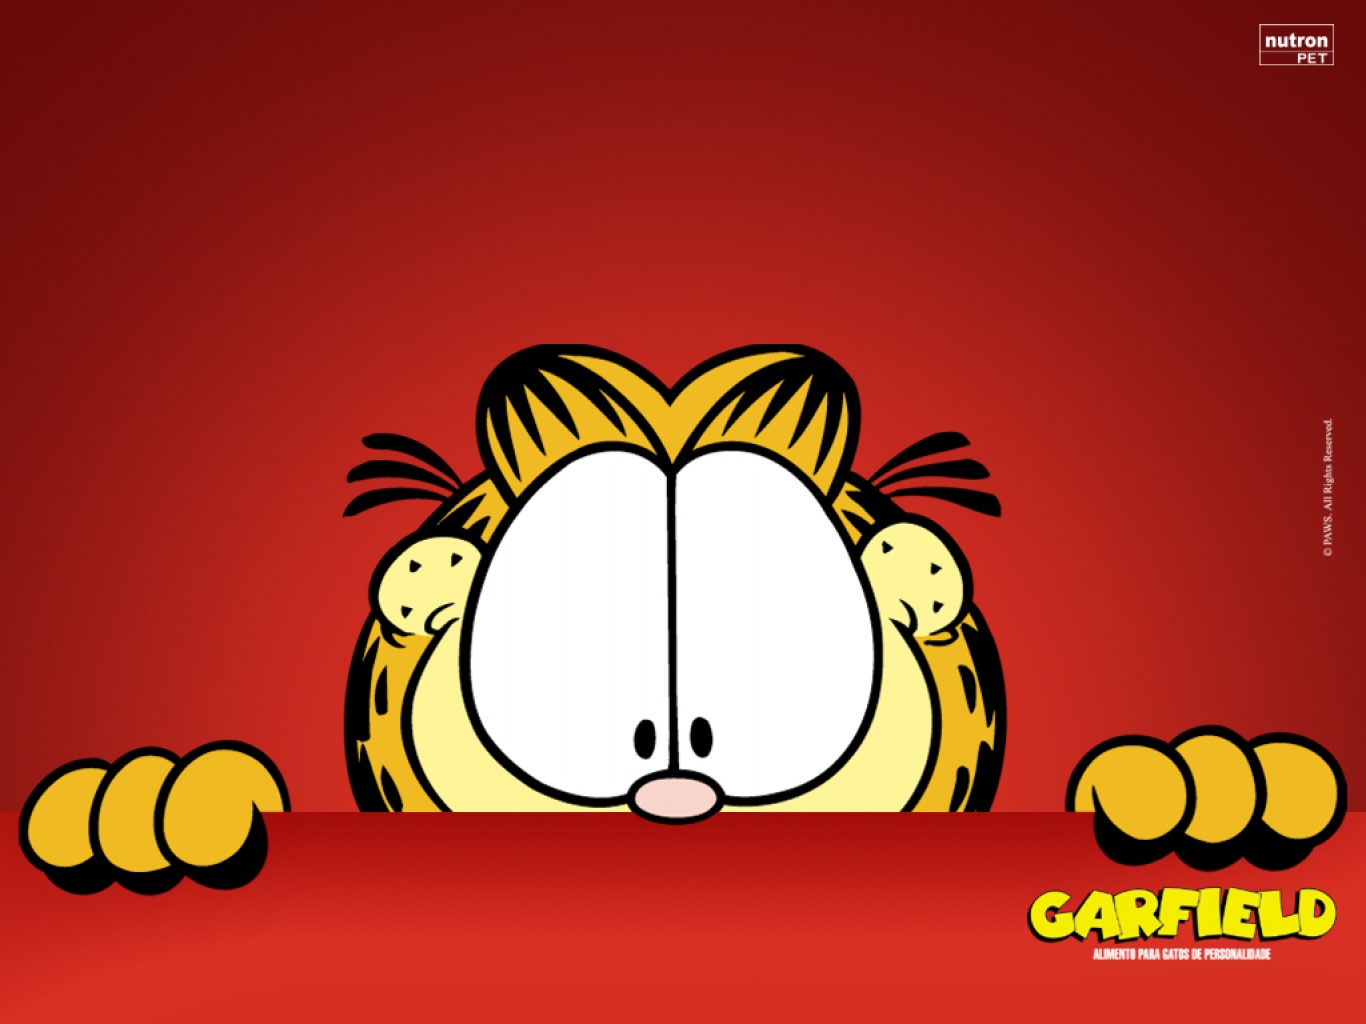 Garfield The Cat Wallpaper - WallpaperSafari